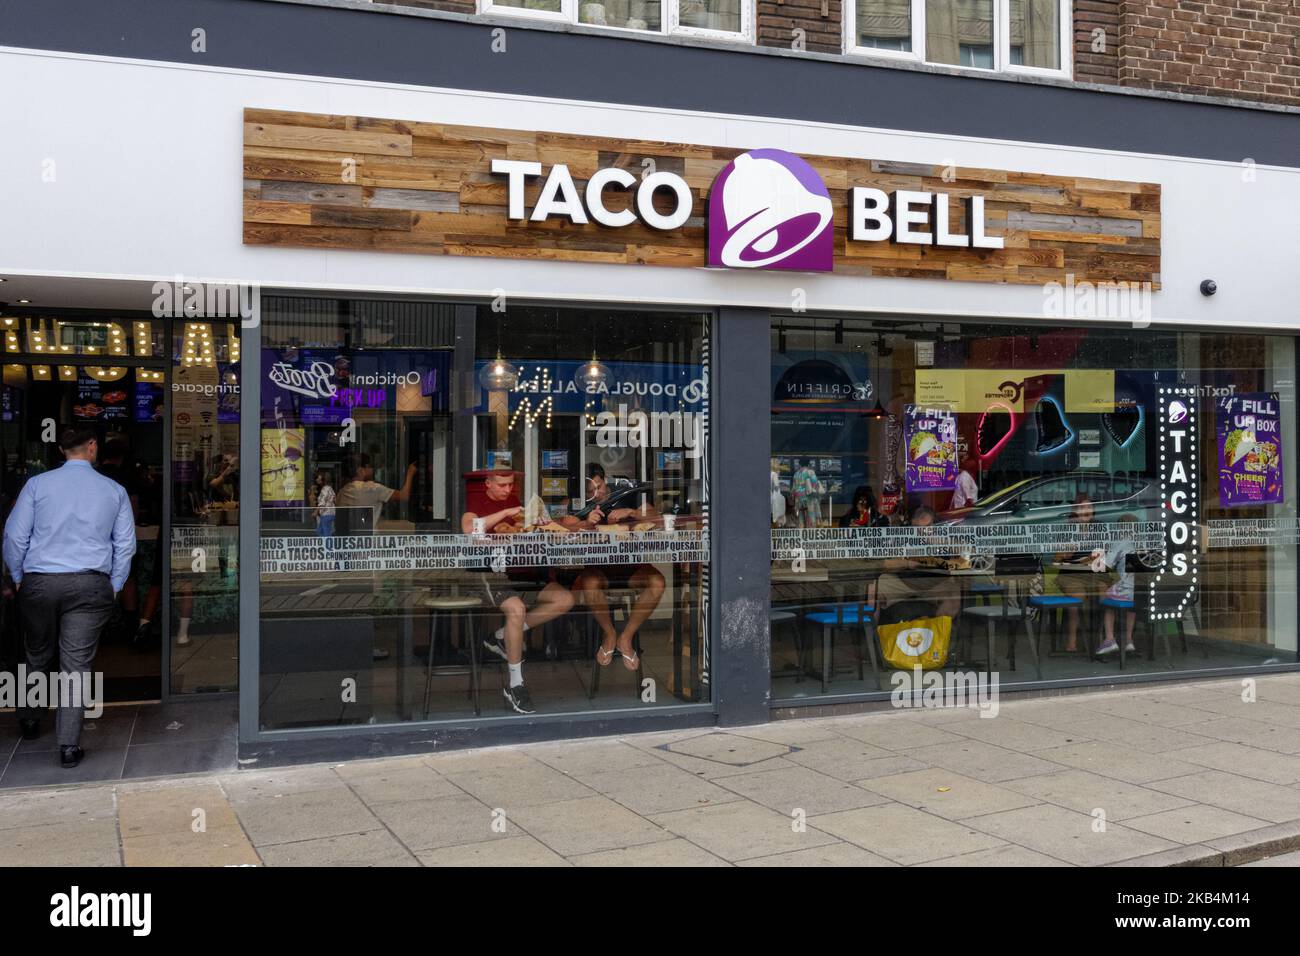 Restaurant de restauration rapide Taco Bell à Hornchurch, Essex, Angleterre Royaume-Uni Banque D'Images